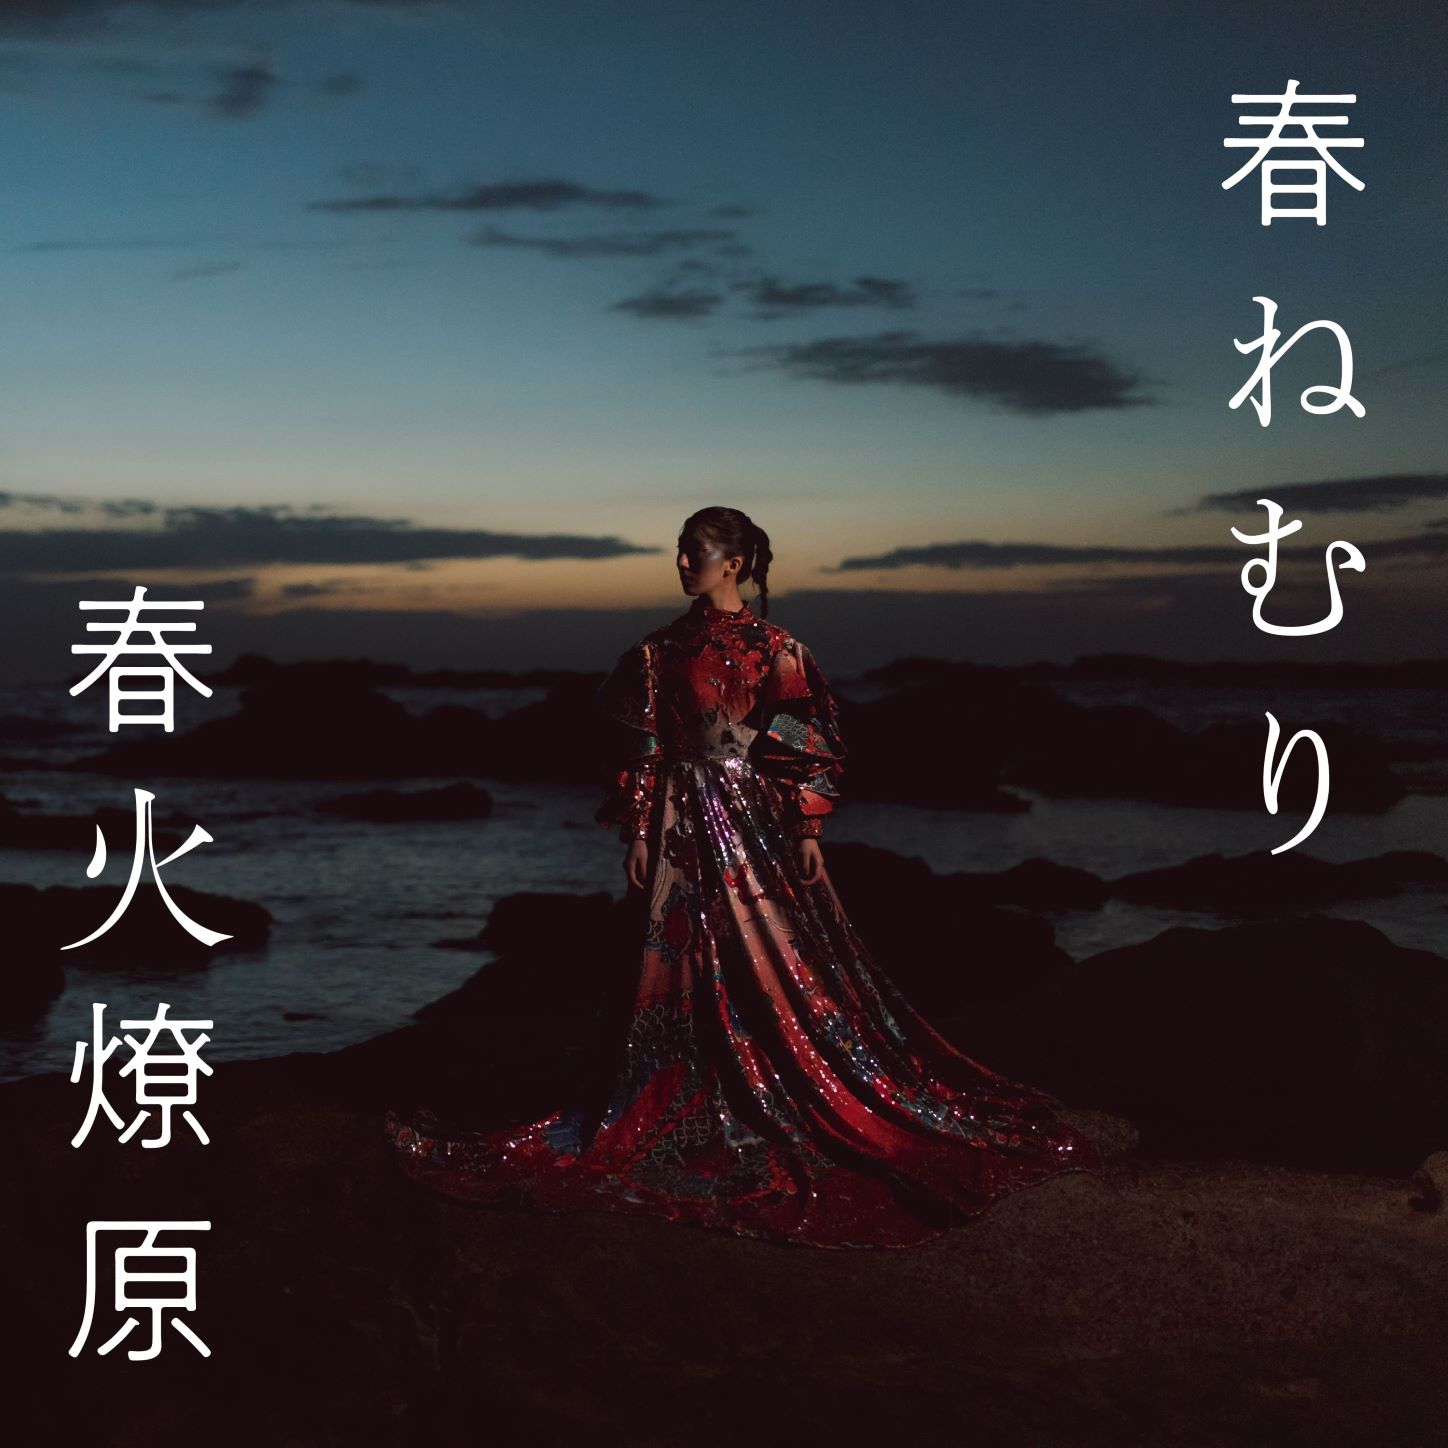 春ねむり 全21曲のセカンドフルアルバム 春火燎原 全貌を公開 The Orchard Japanのプレスリリース